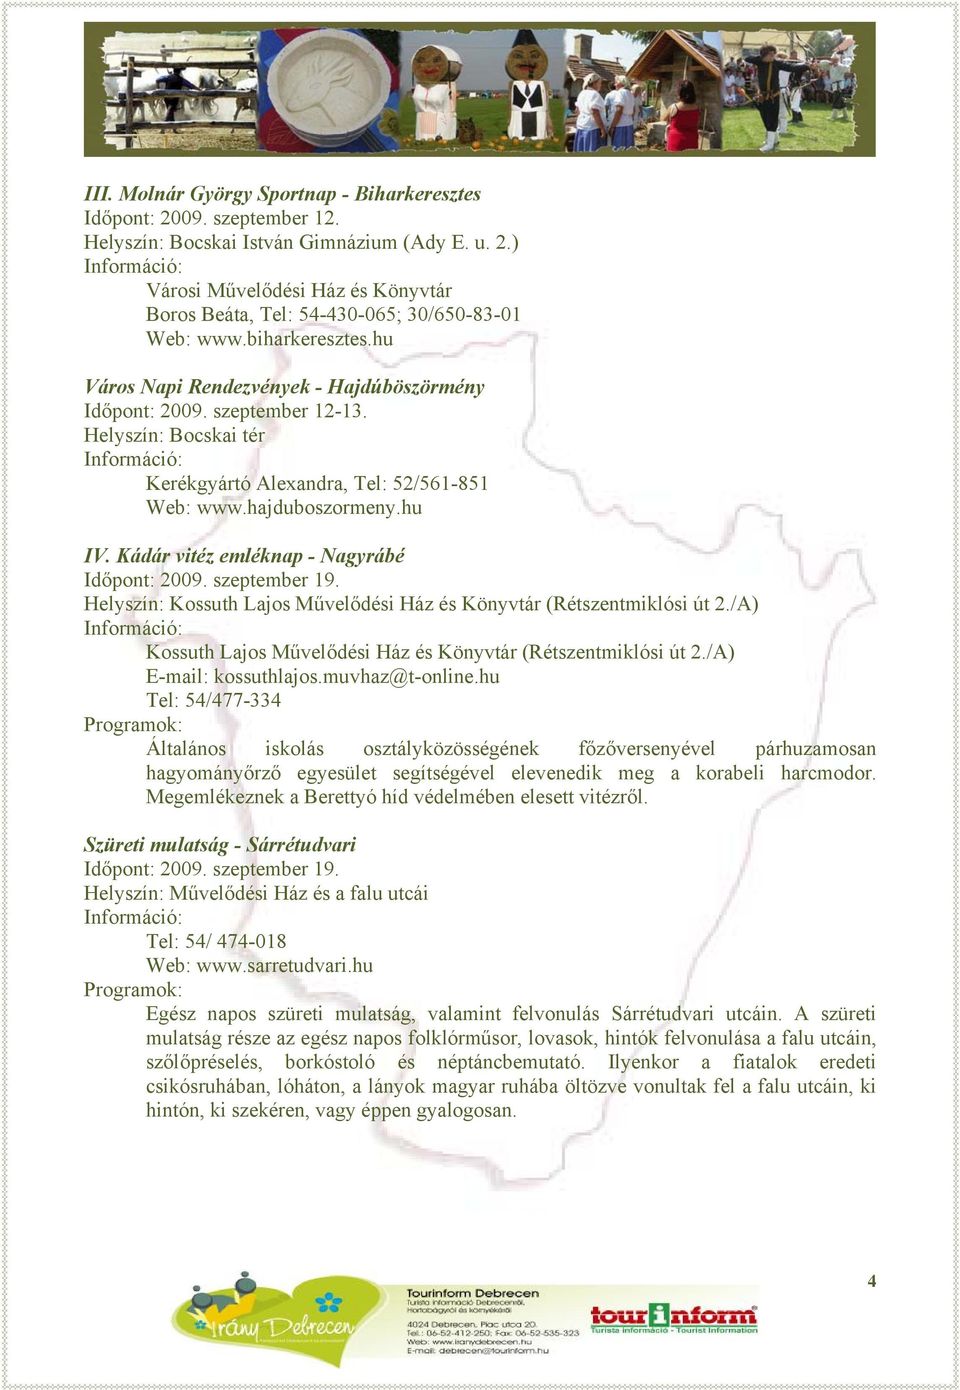 Kádár vitéz emléknap - Nagyrábé Időpont: 2009. szeptember 19. Helyszín: Kossuth Lajos Művelődési Ház és Könyvtár (Rétszentmiklósi út 2.